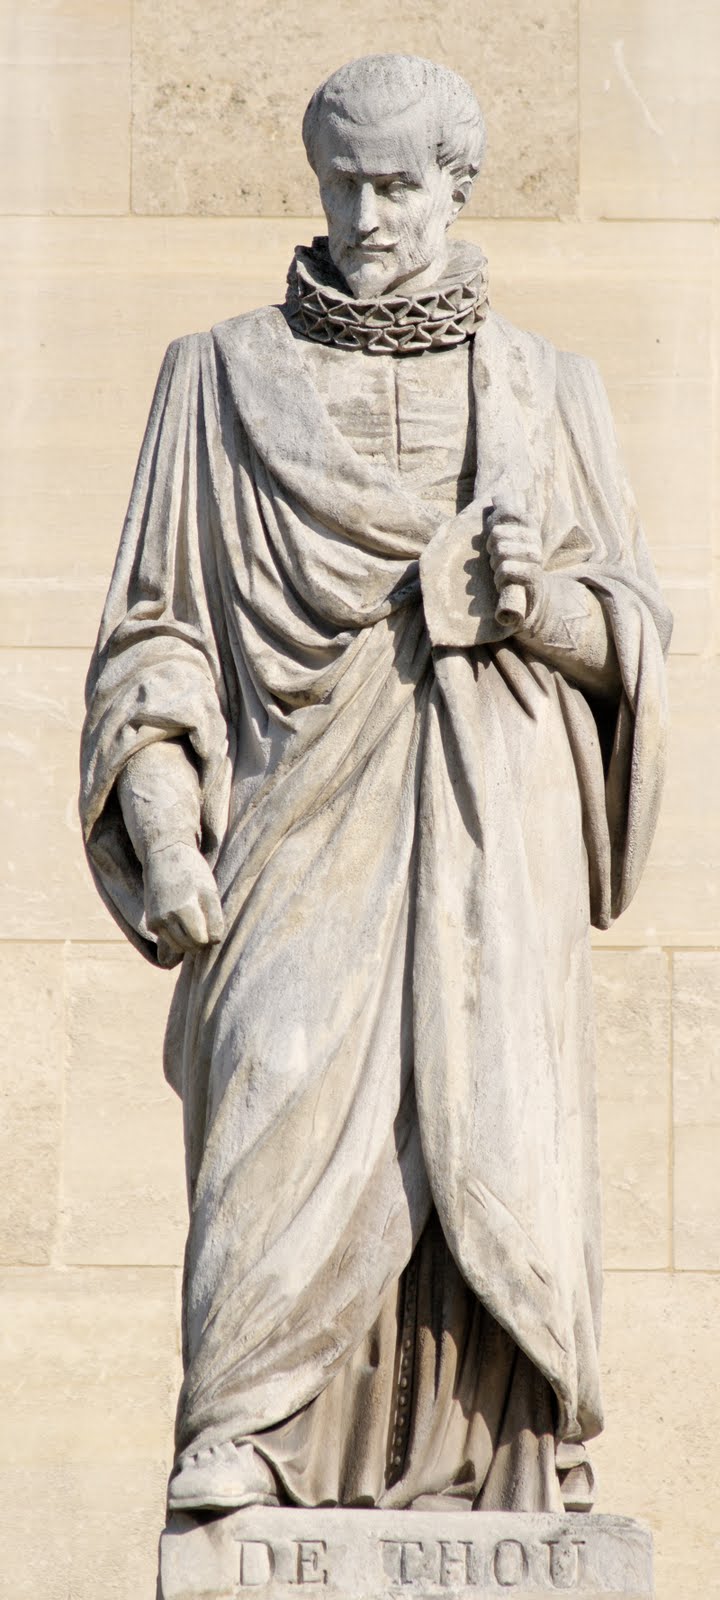 Jacques-Auguste_de_Thou_cour_Napoleon_Louvre.jpg